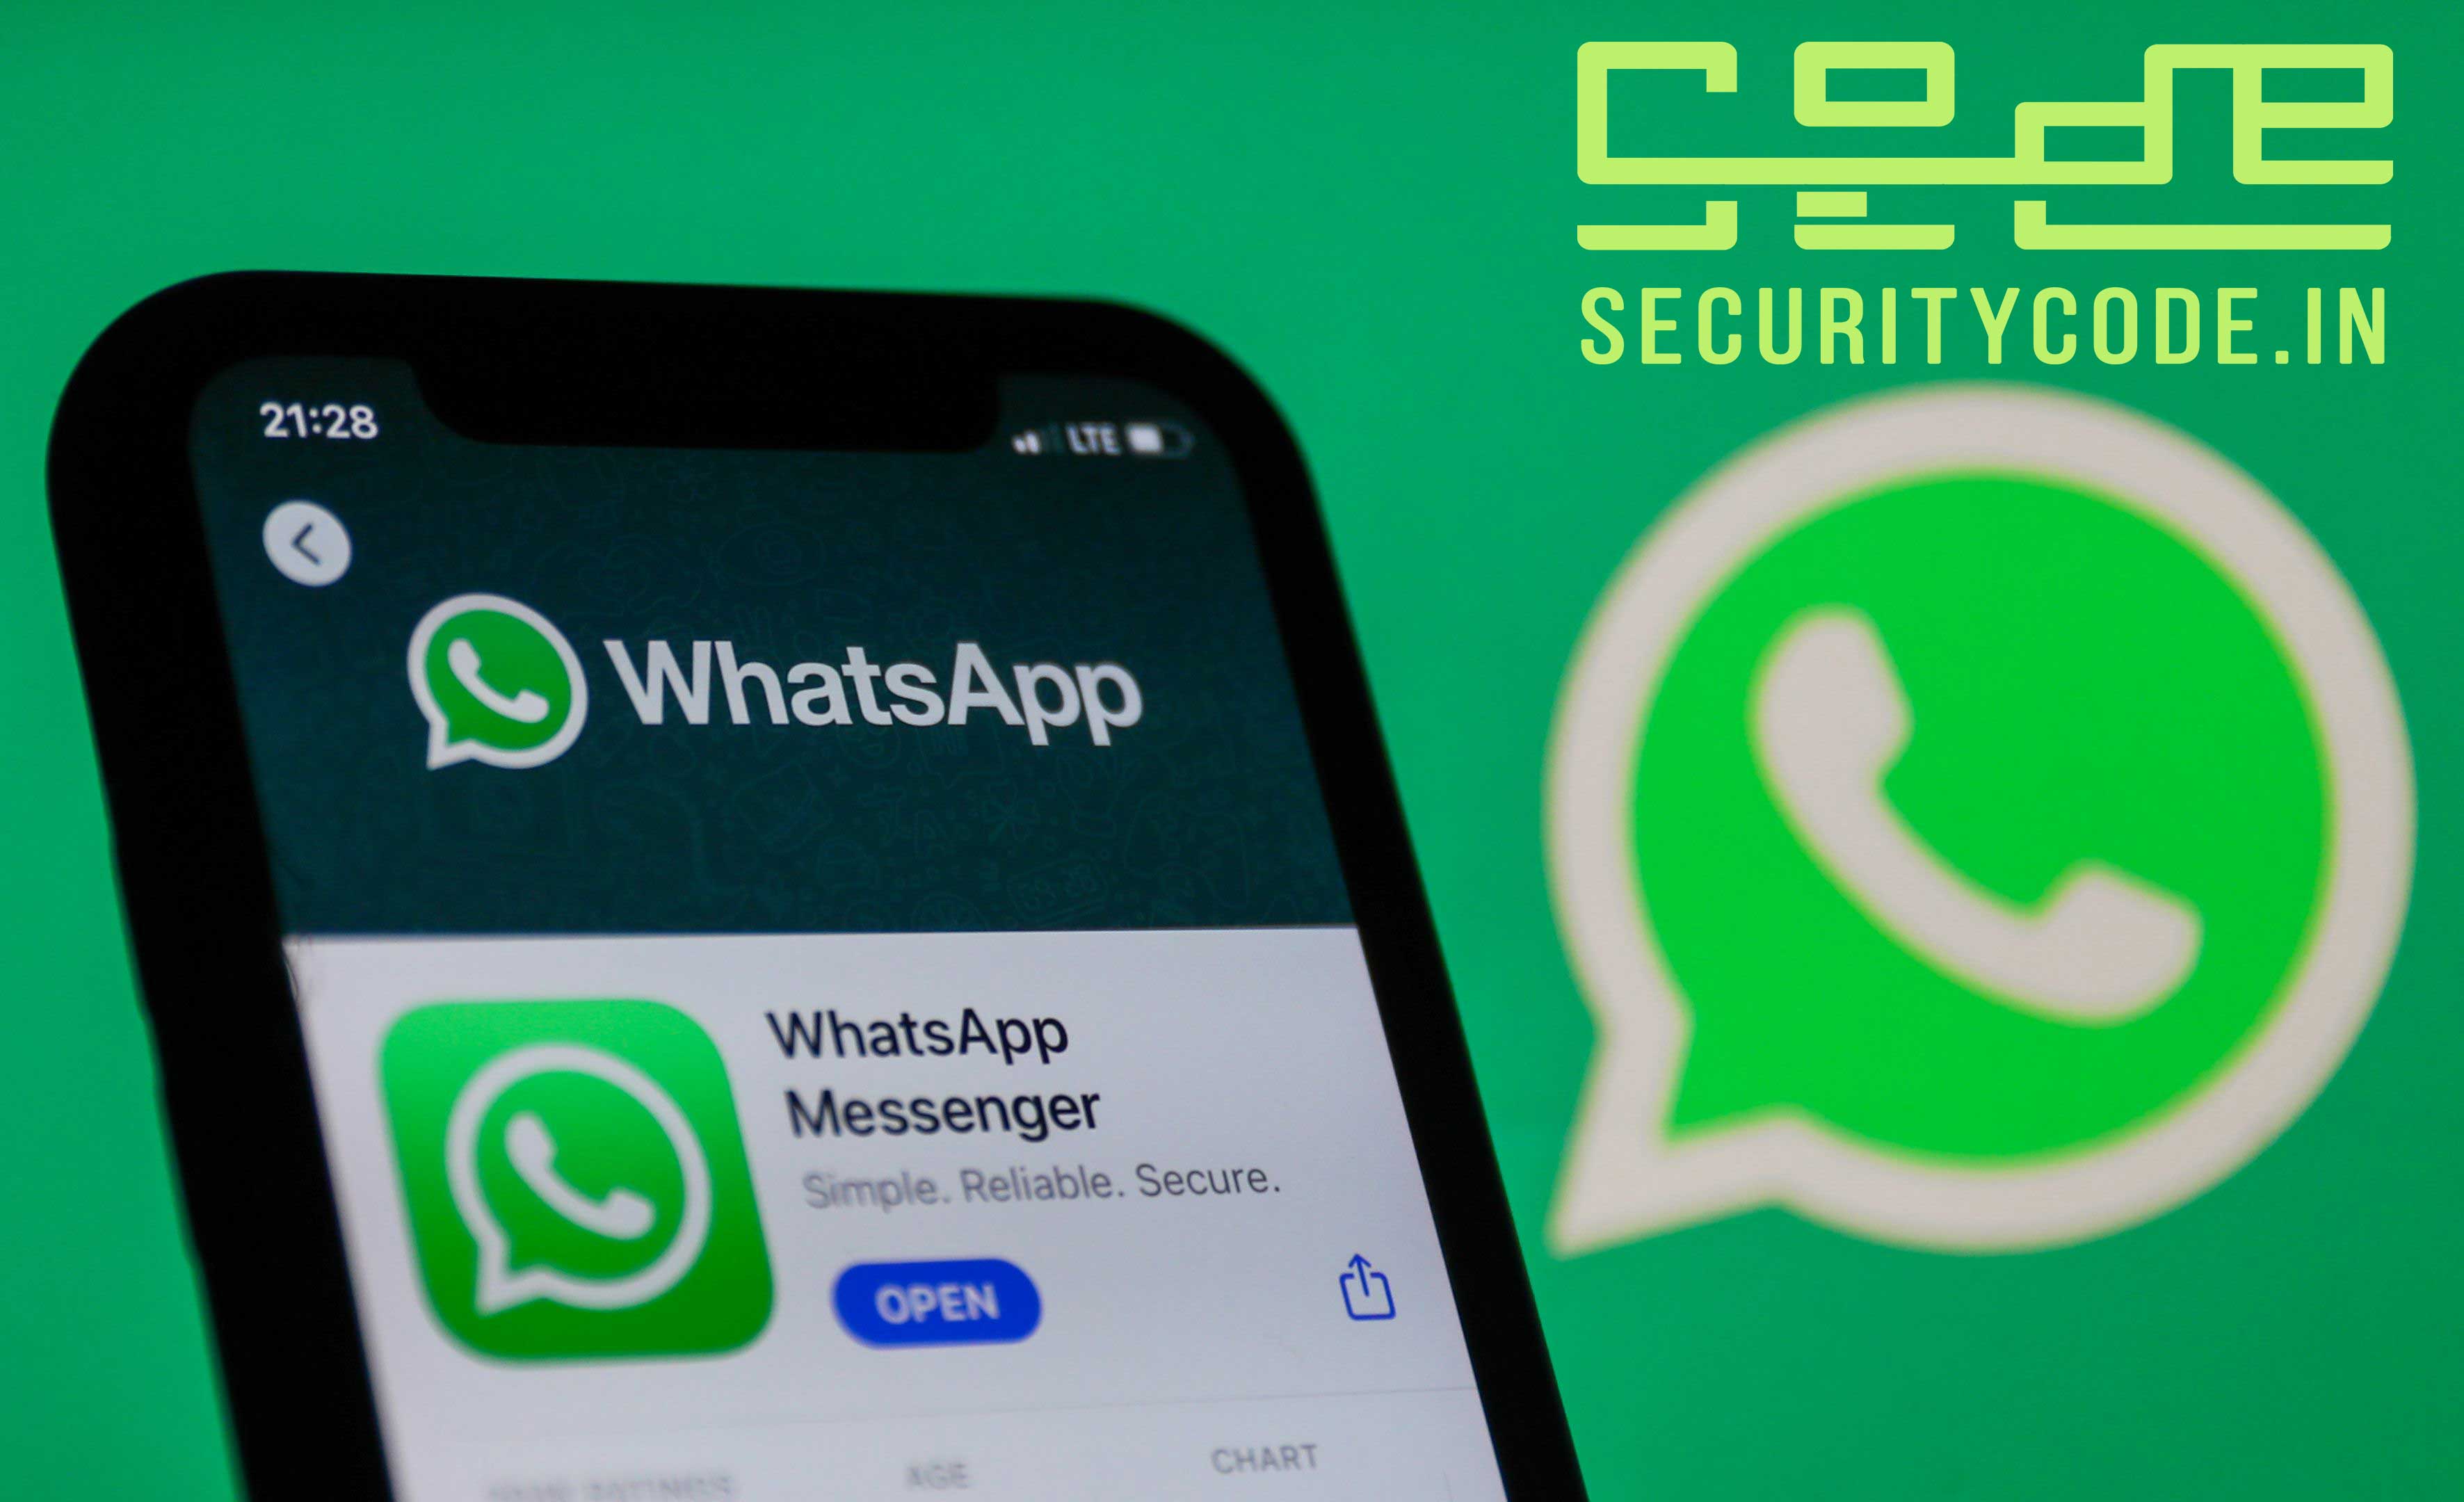 Hebben anderen toegang tot WhatsApp-inhoud?